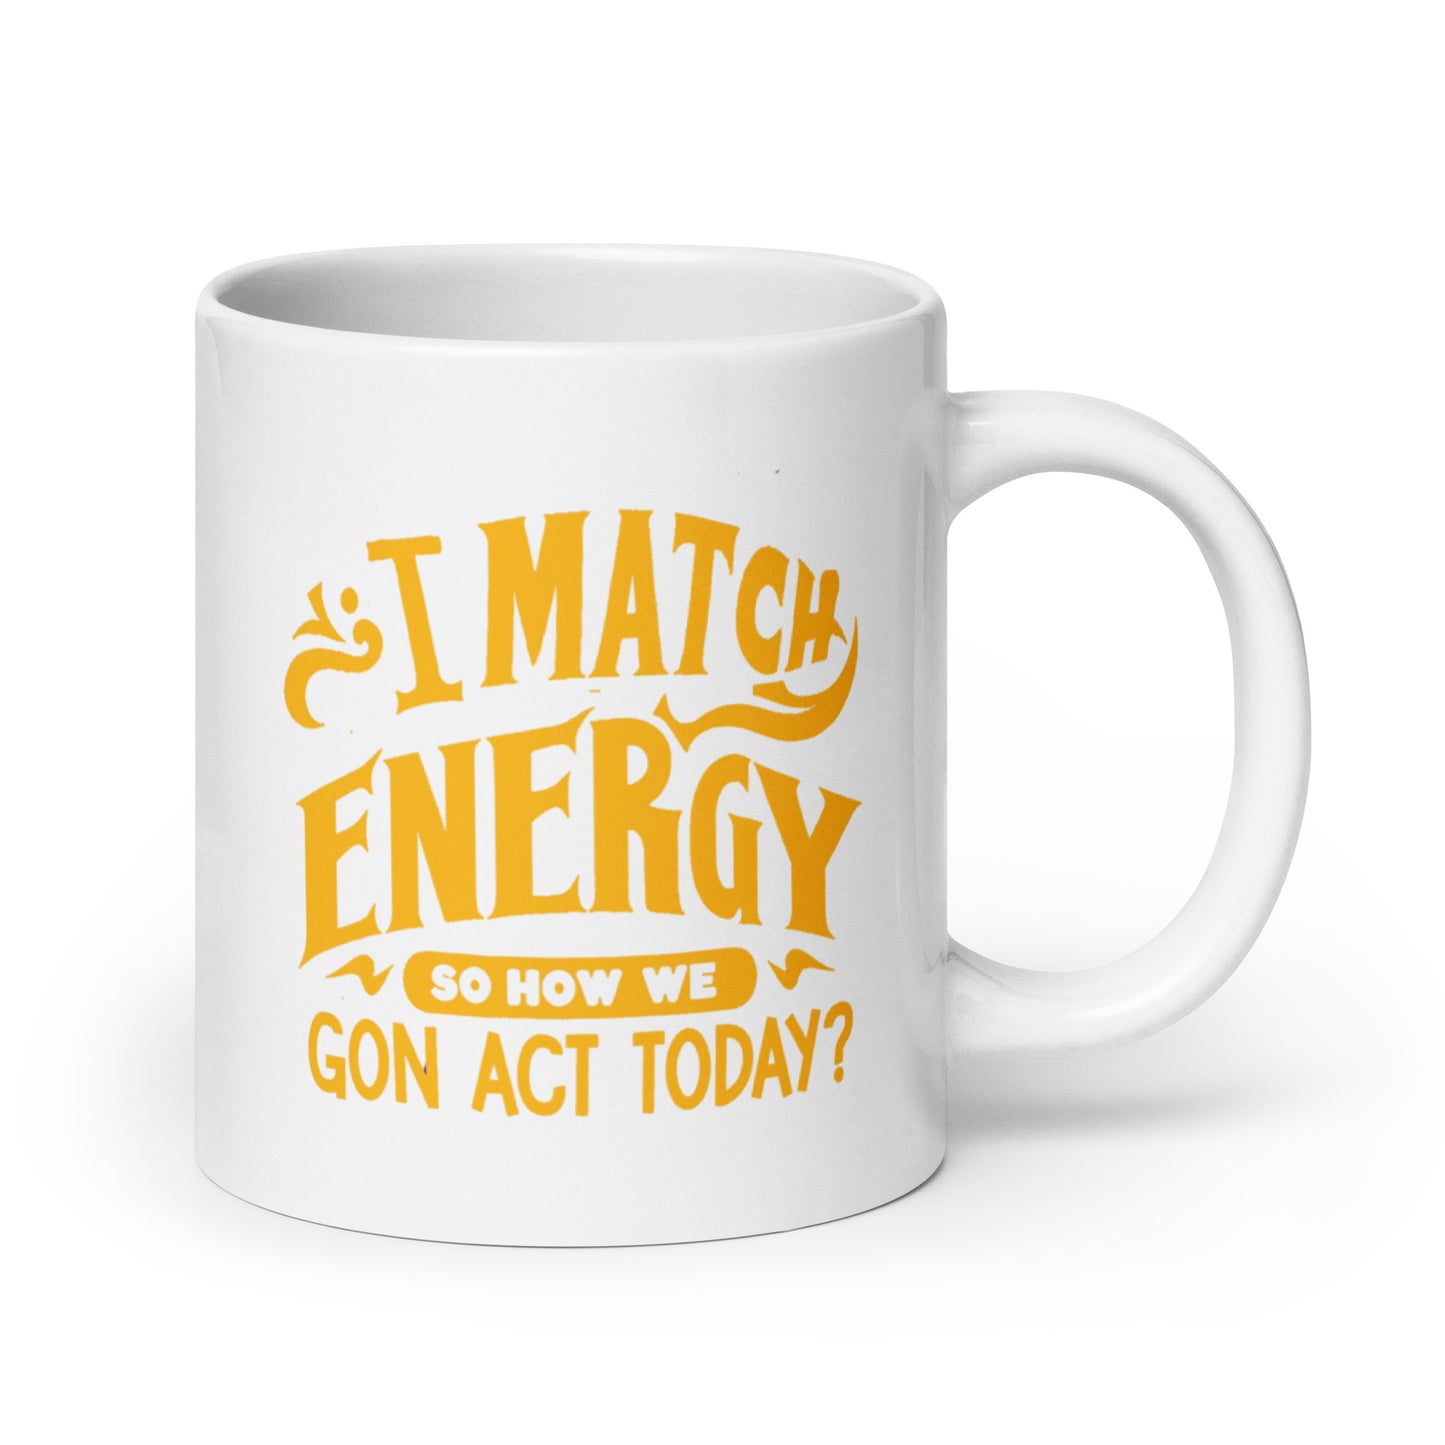 I Match Energy White Ceramic Coffee Mug